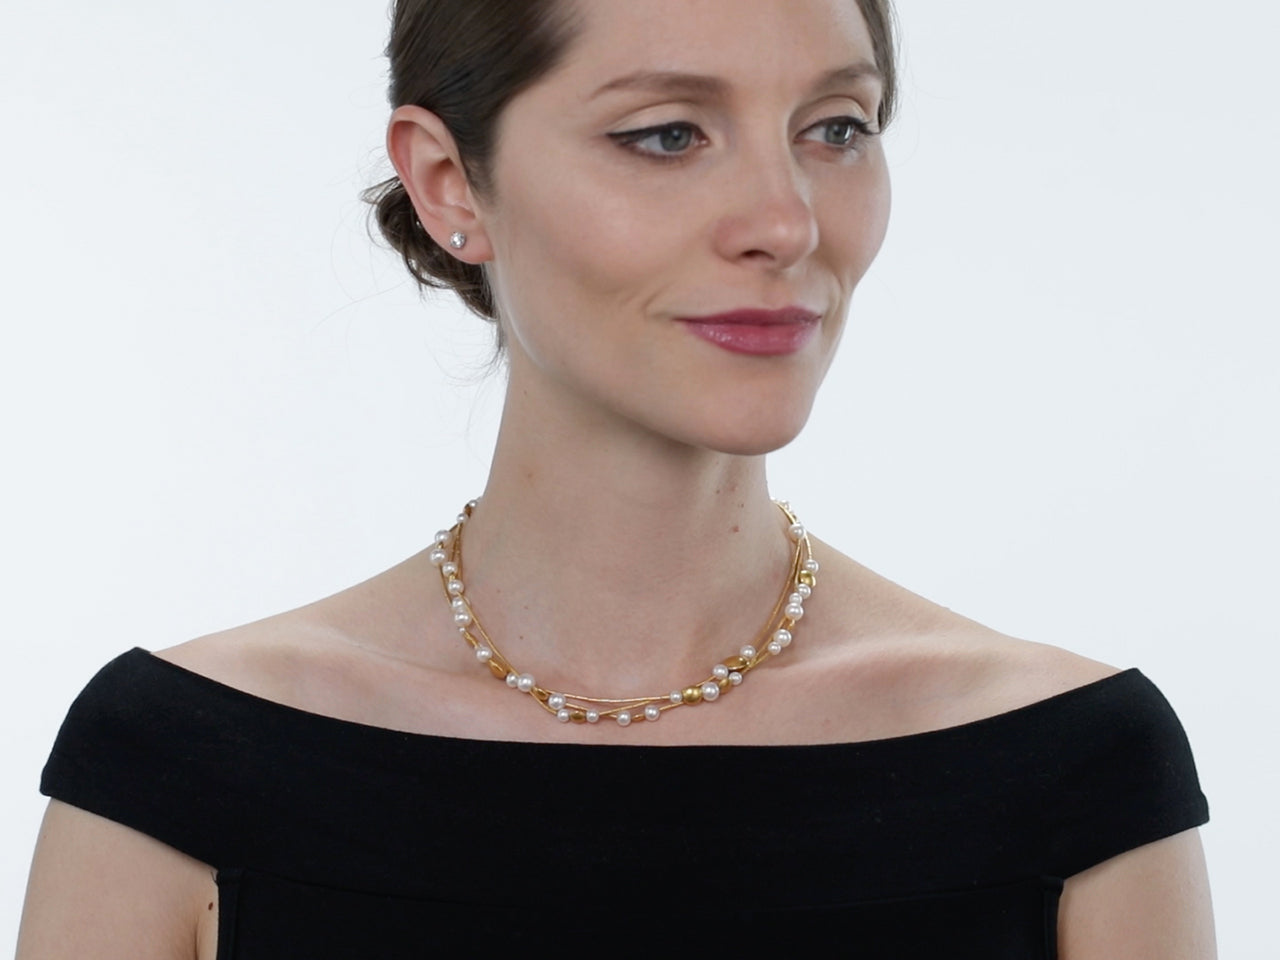 Gurhan 'Lentil' Pearl Necklace in 24K Gold